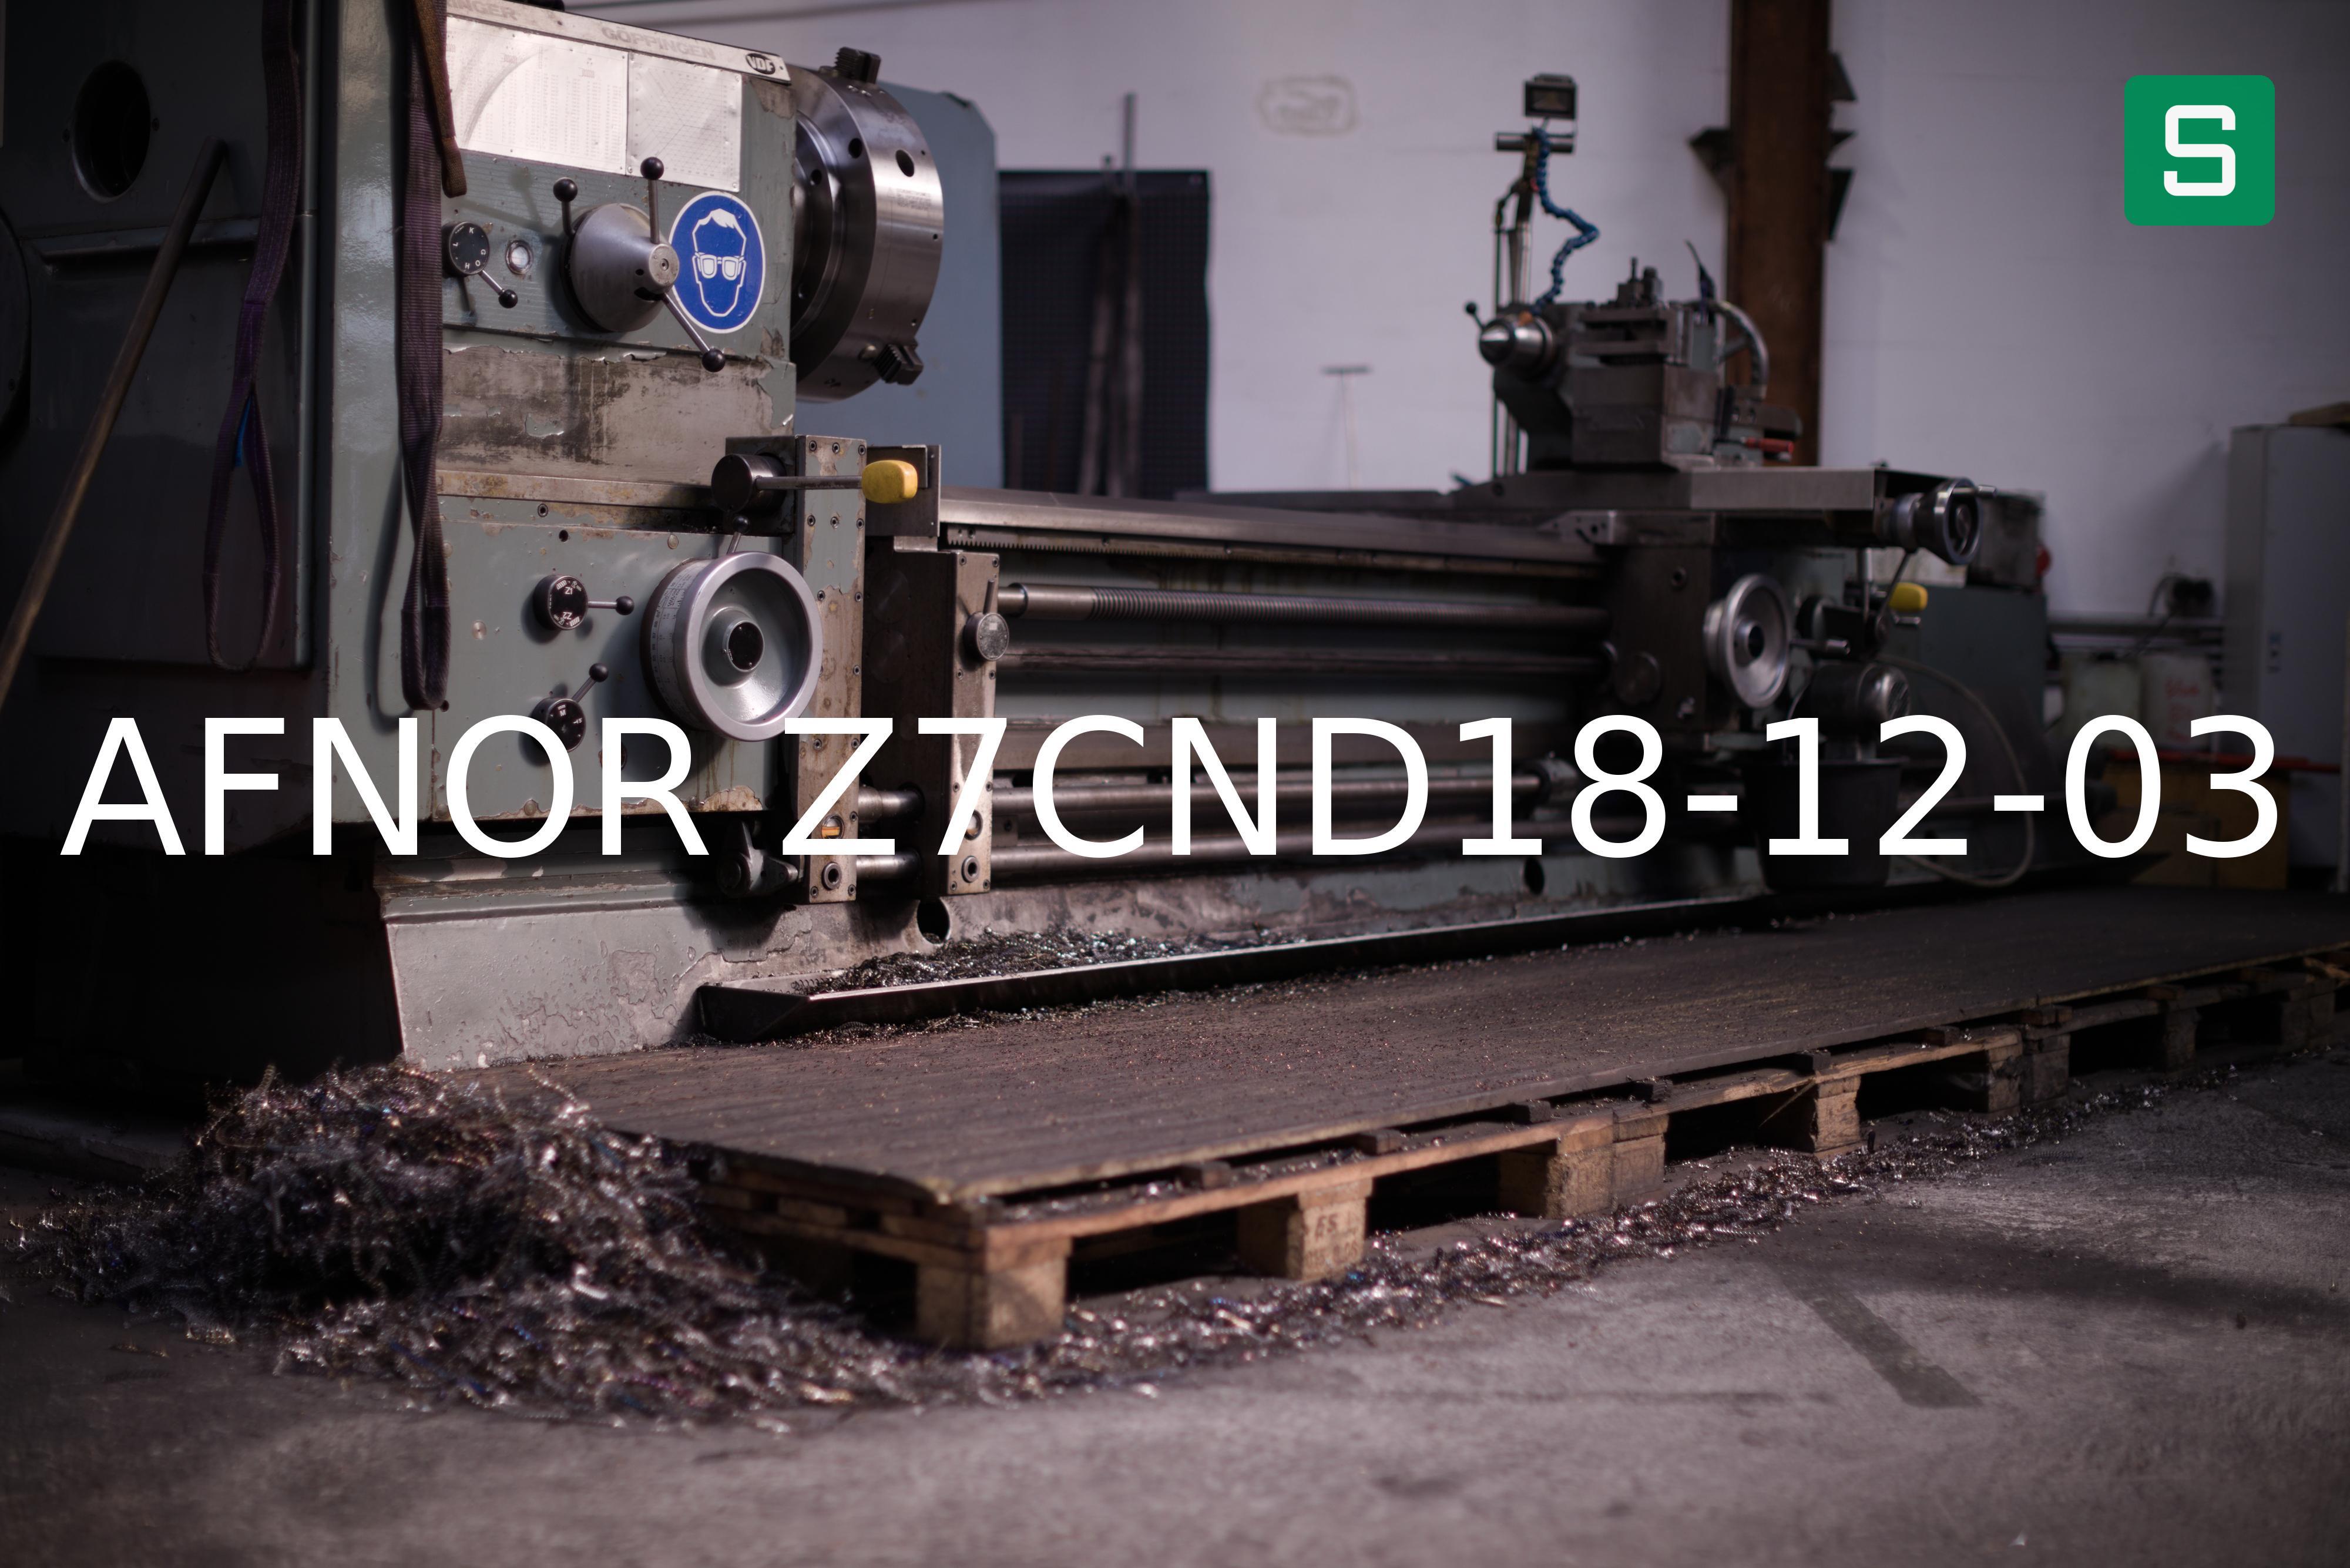 Steel Material: AFNOR Z7CND18-12-03